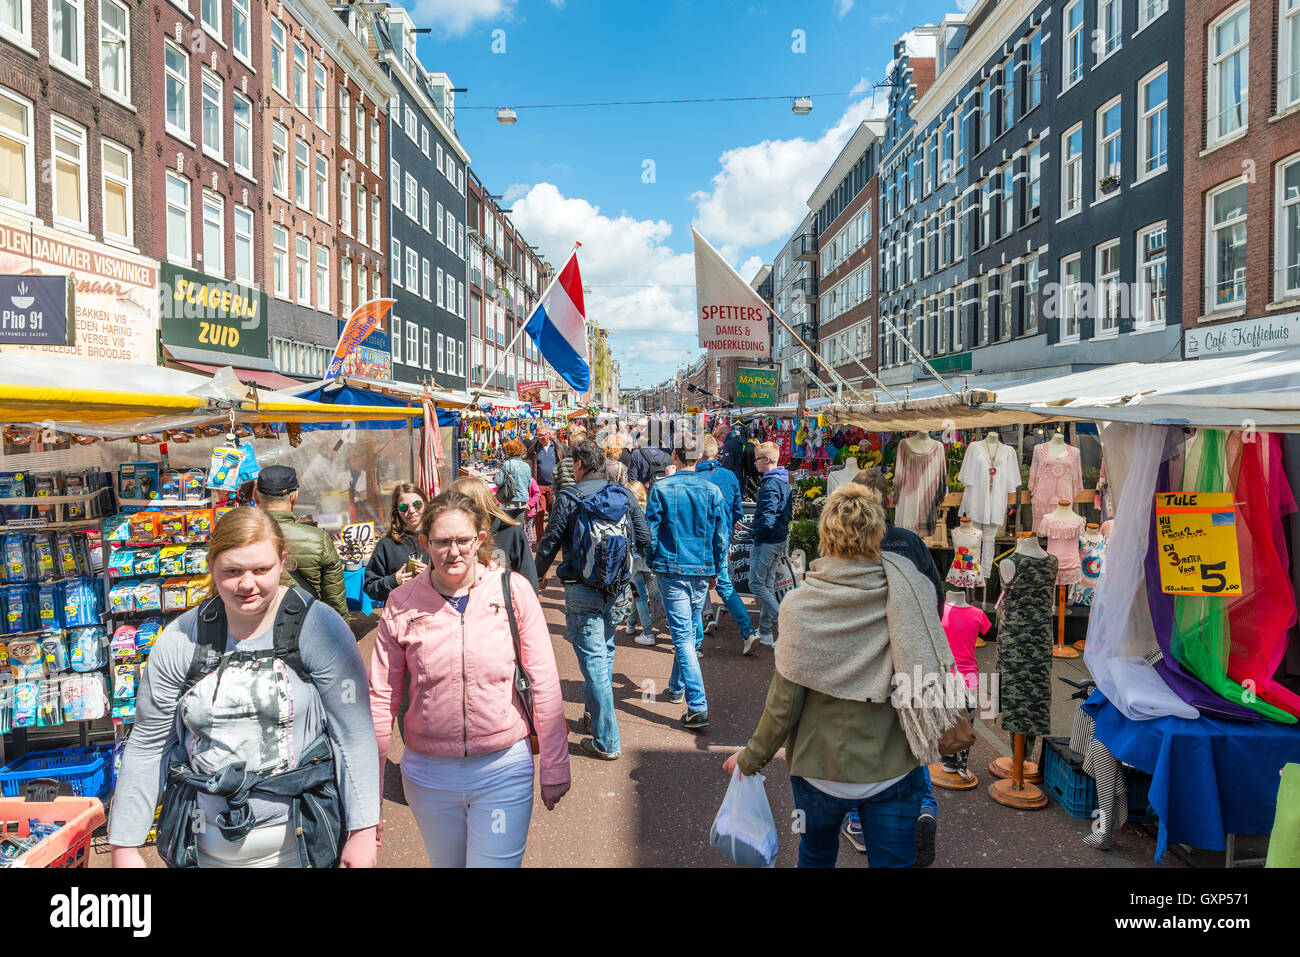 Les touristes à pied au marché Albert Cuyp. Le marché Albert Cuyp est l'un des sites de la ville d'Amsterdam, Pays-Bas Banque D'Images